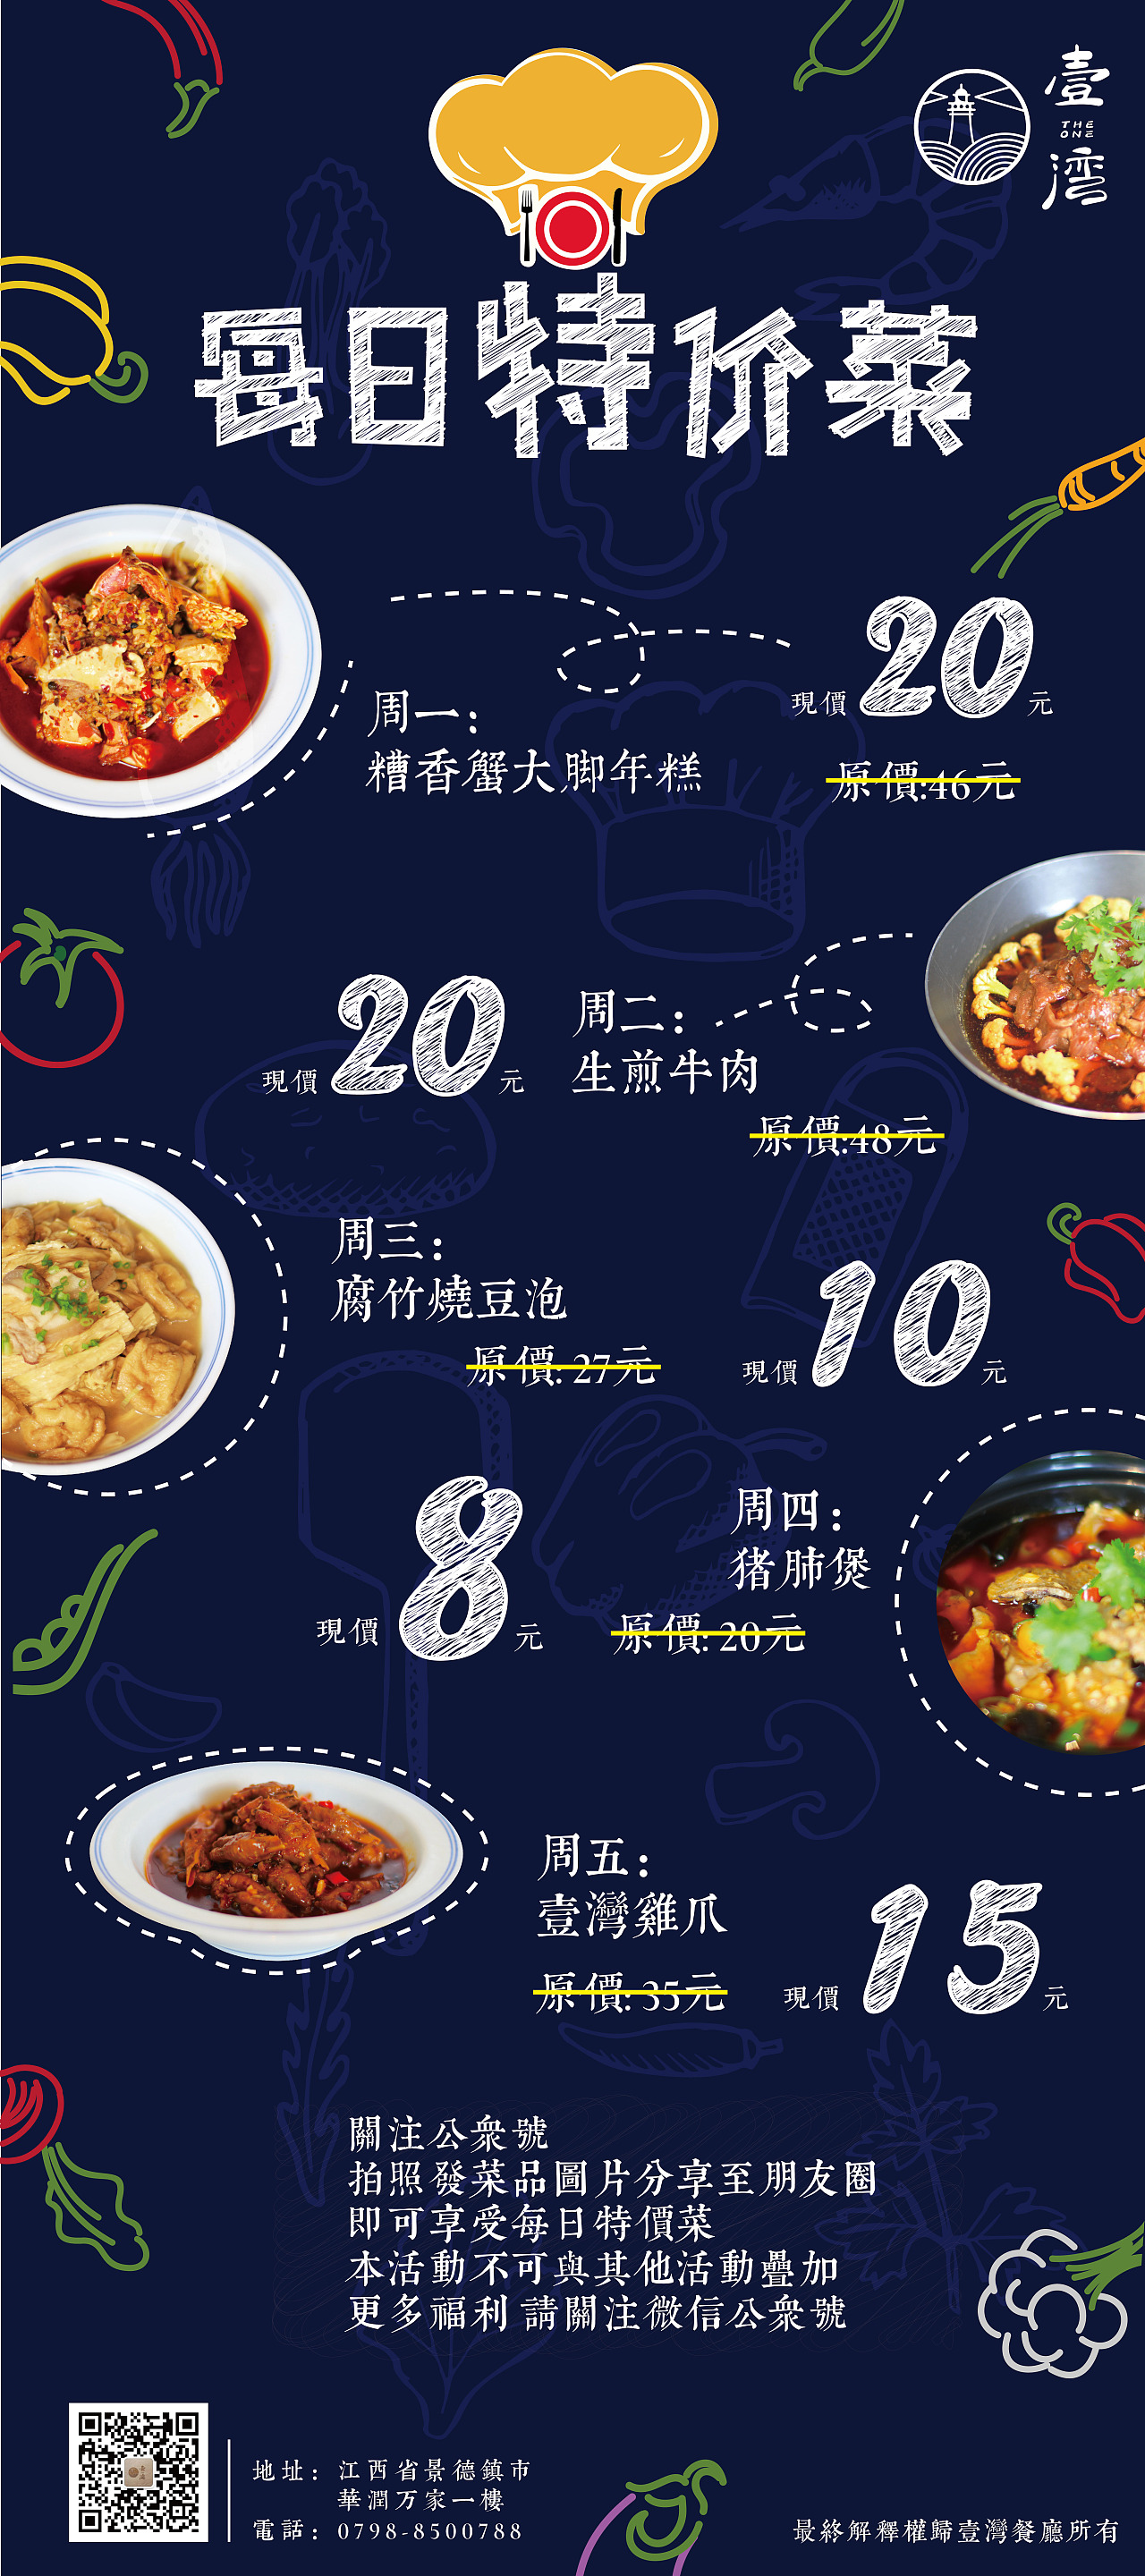 简洁每日特价菜餐厅餐馆菜品促销活动海报图片下载 - 觅知网